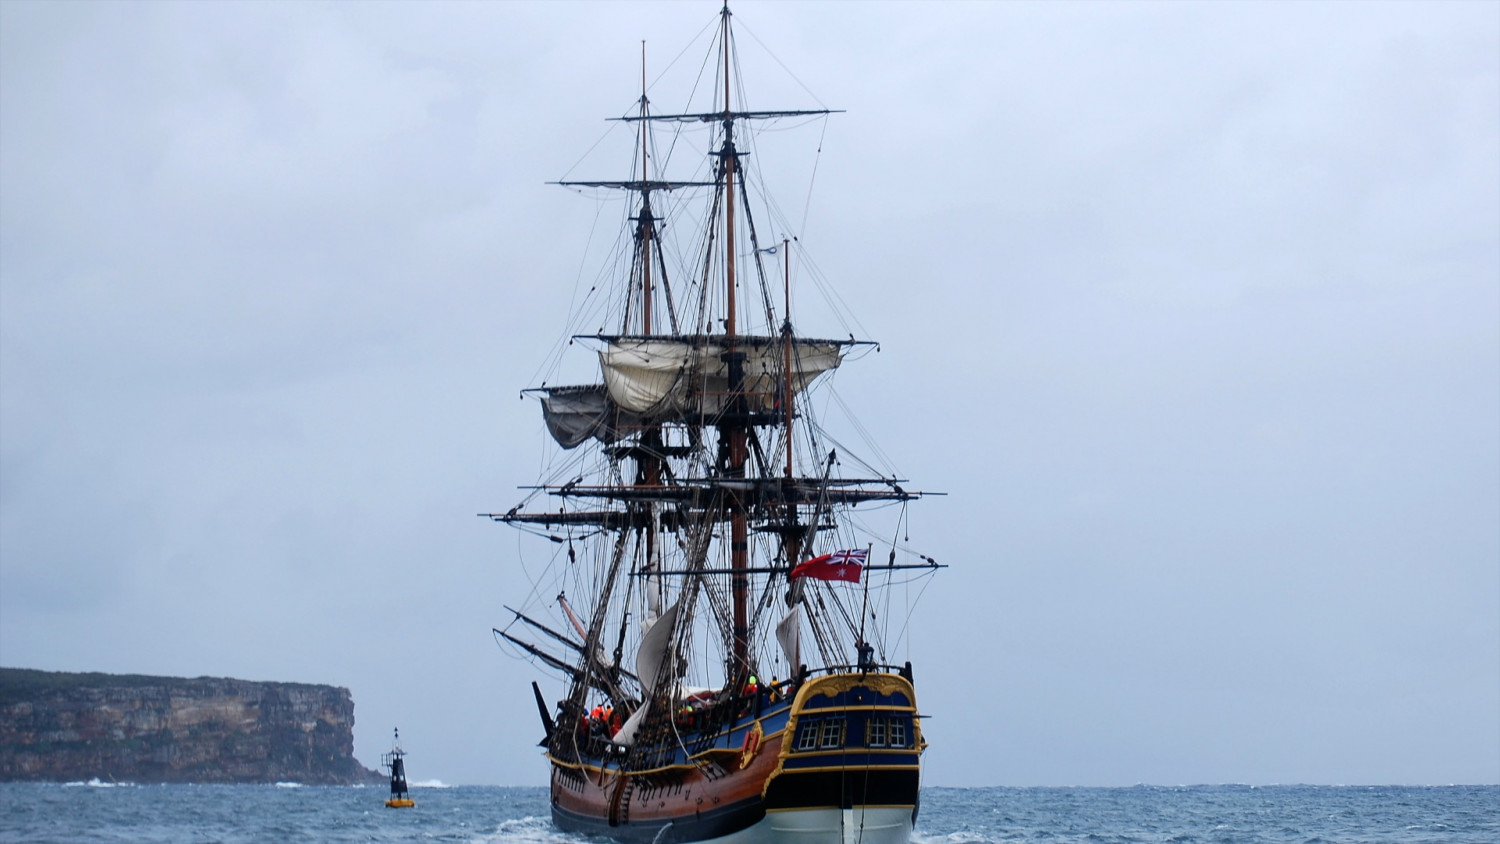 Australian PM Announces Funding for Captain Cook Voyage